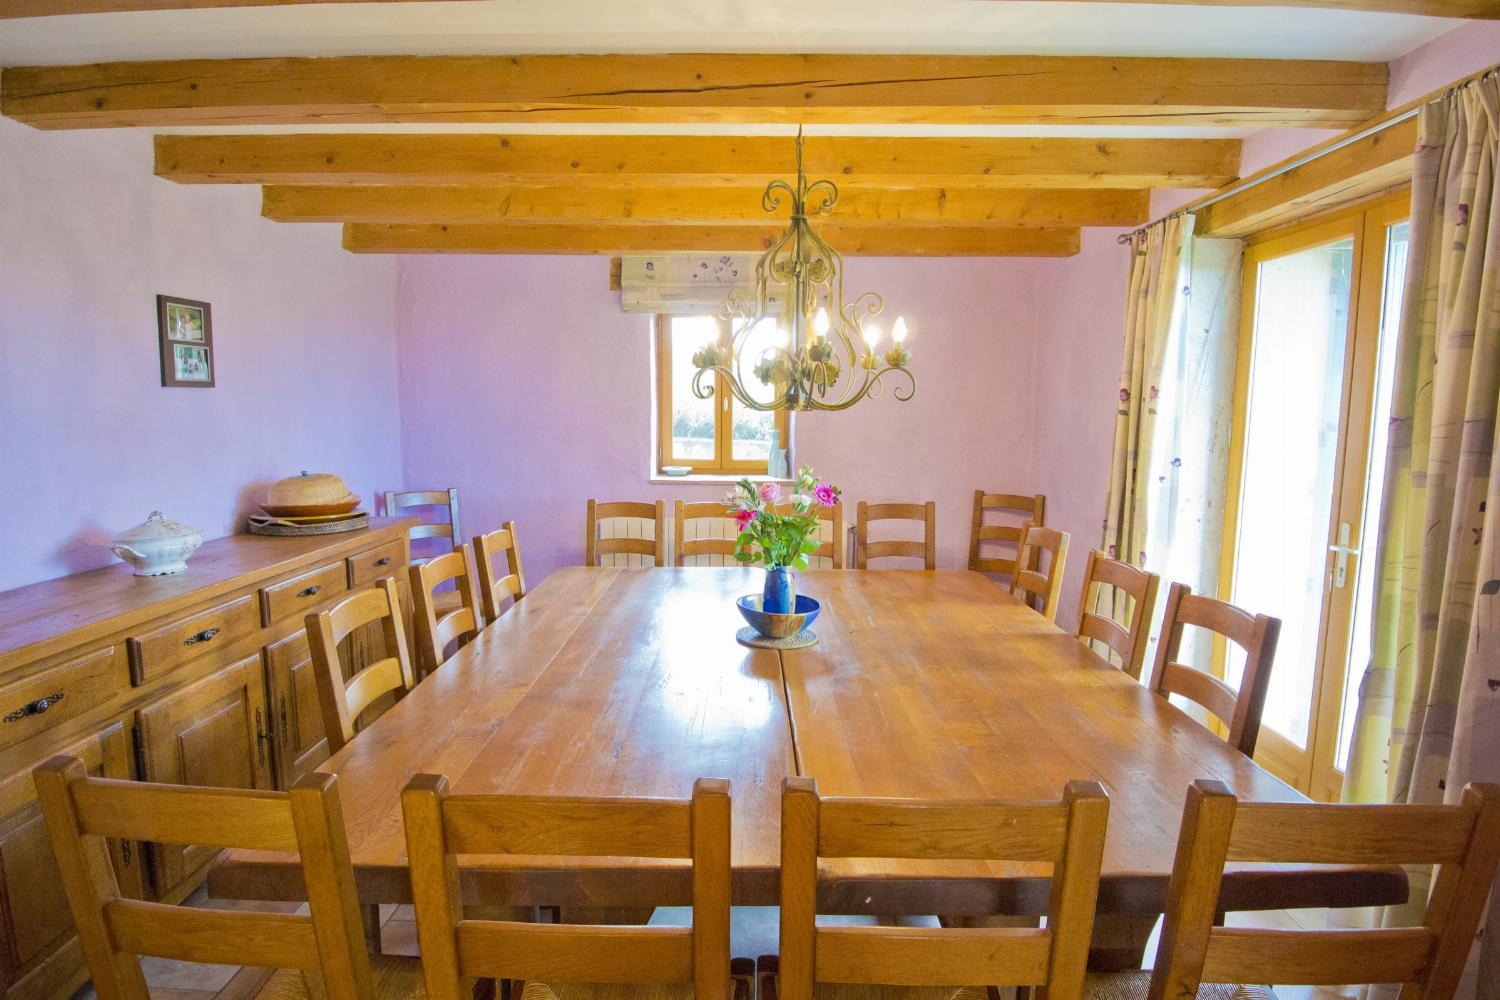 Dining room | Rental home in Tarn-en-Garonne